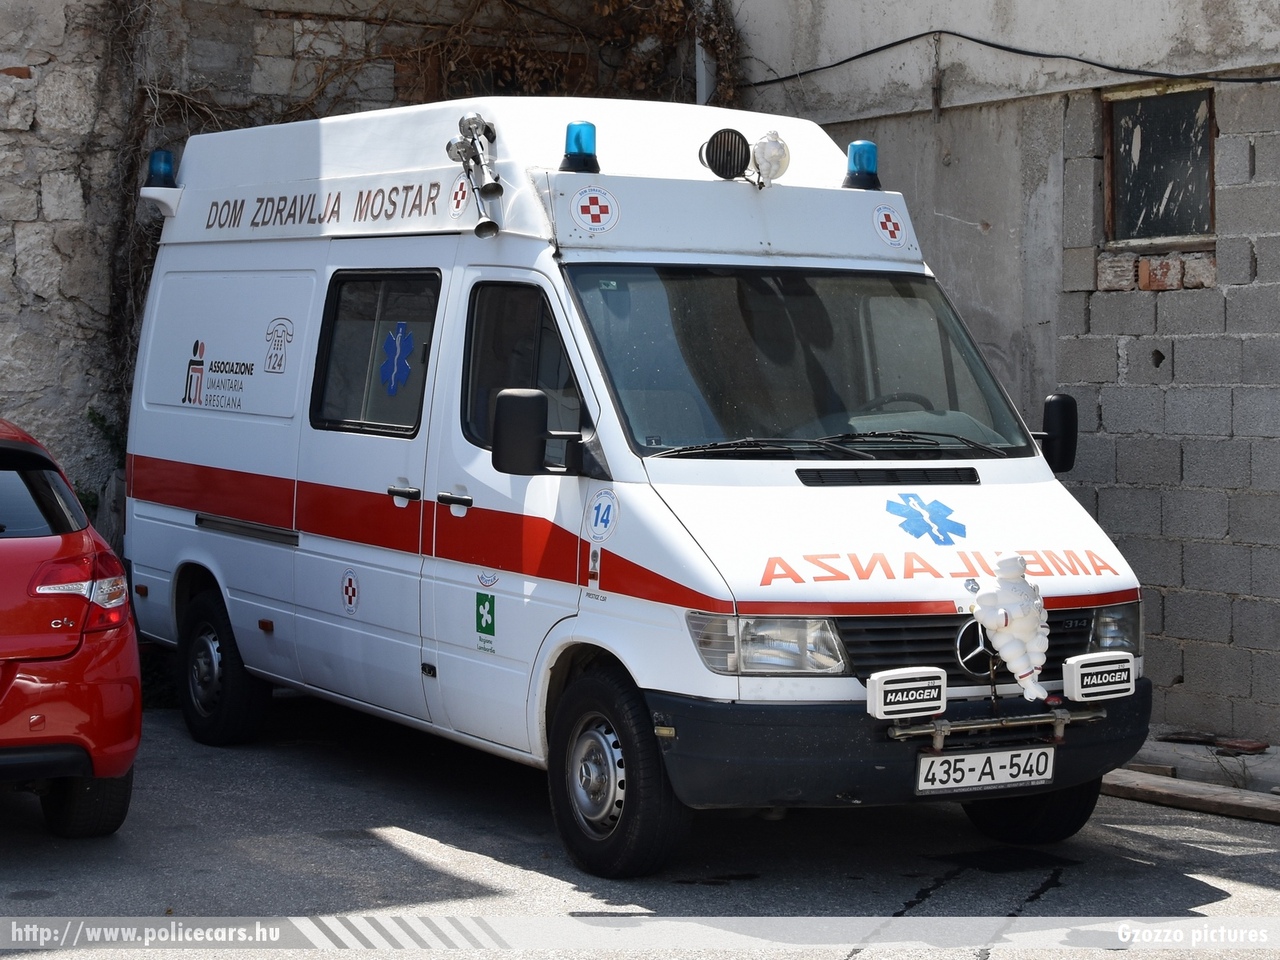 Mercedes-Benz Sprinter, Mostar, fotó: Gzozzo pictures
Keywords: Bosznia-Hercegovina mentő mentőautó bosnia bosnia-herzegovina ambulance